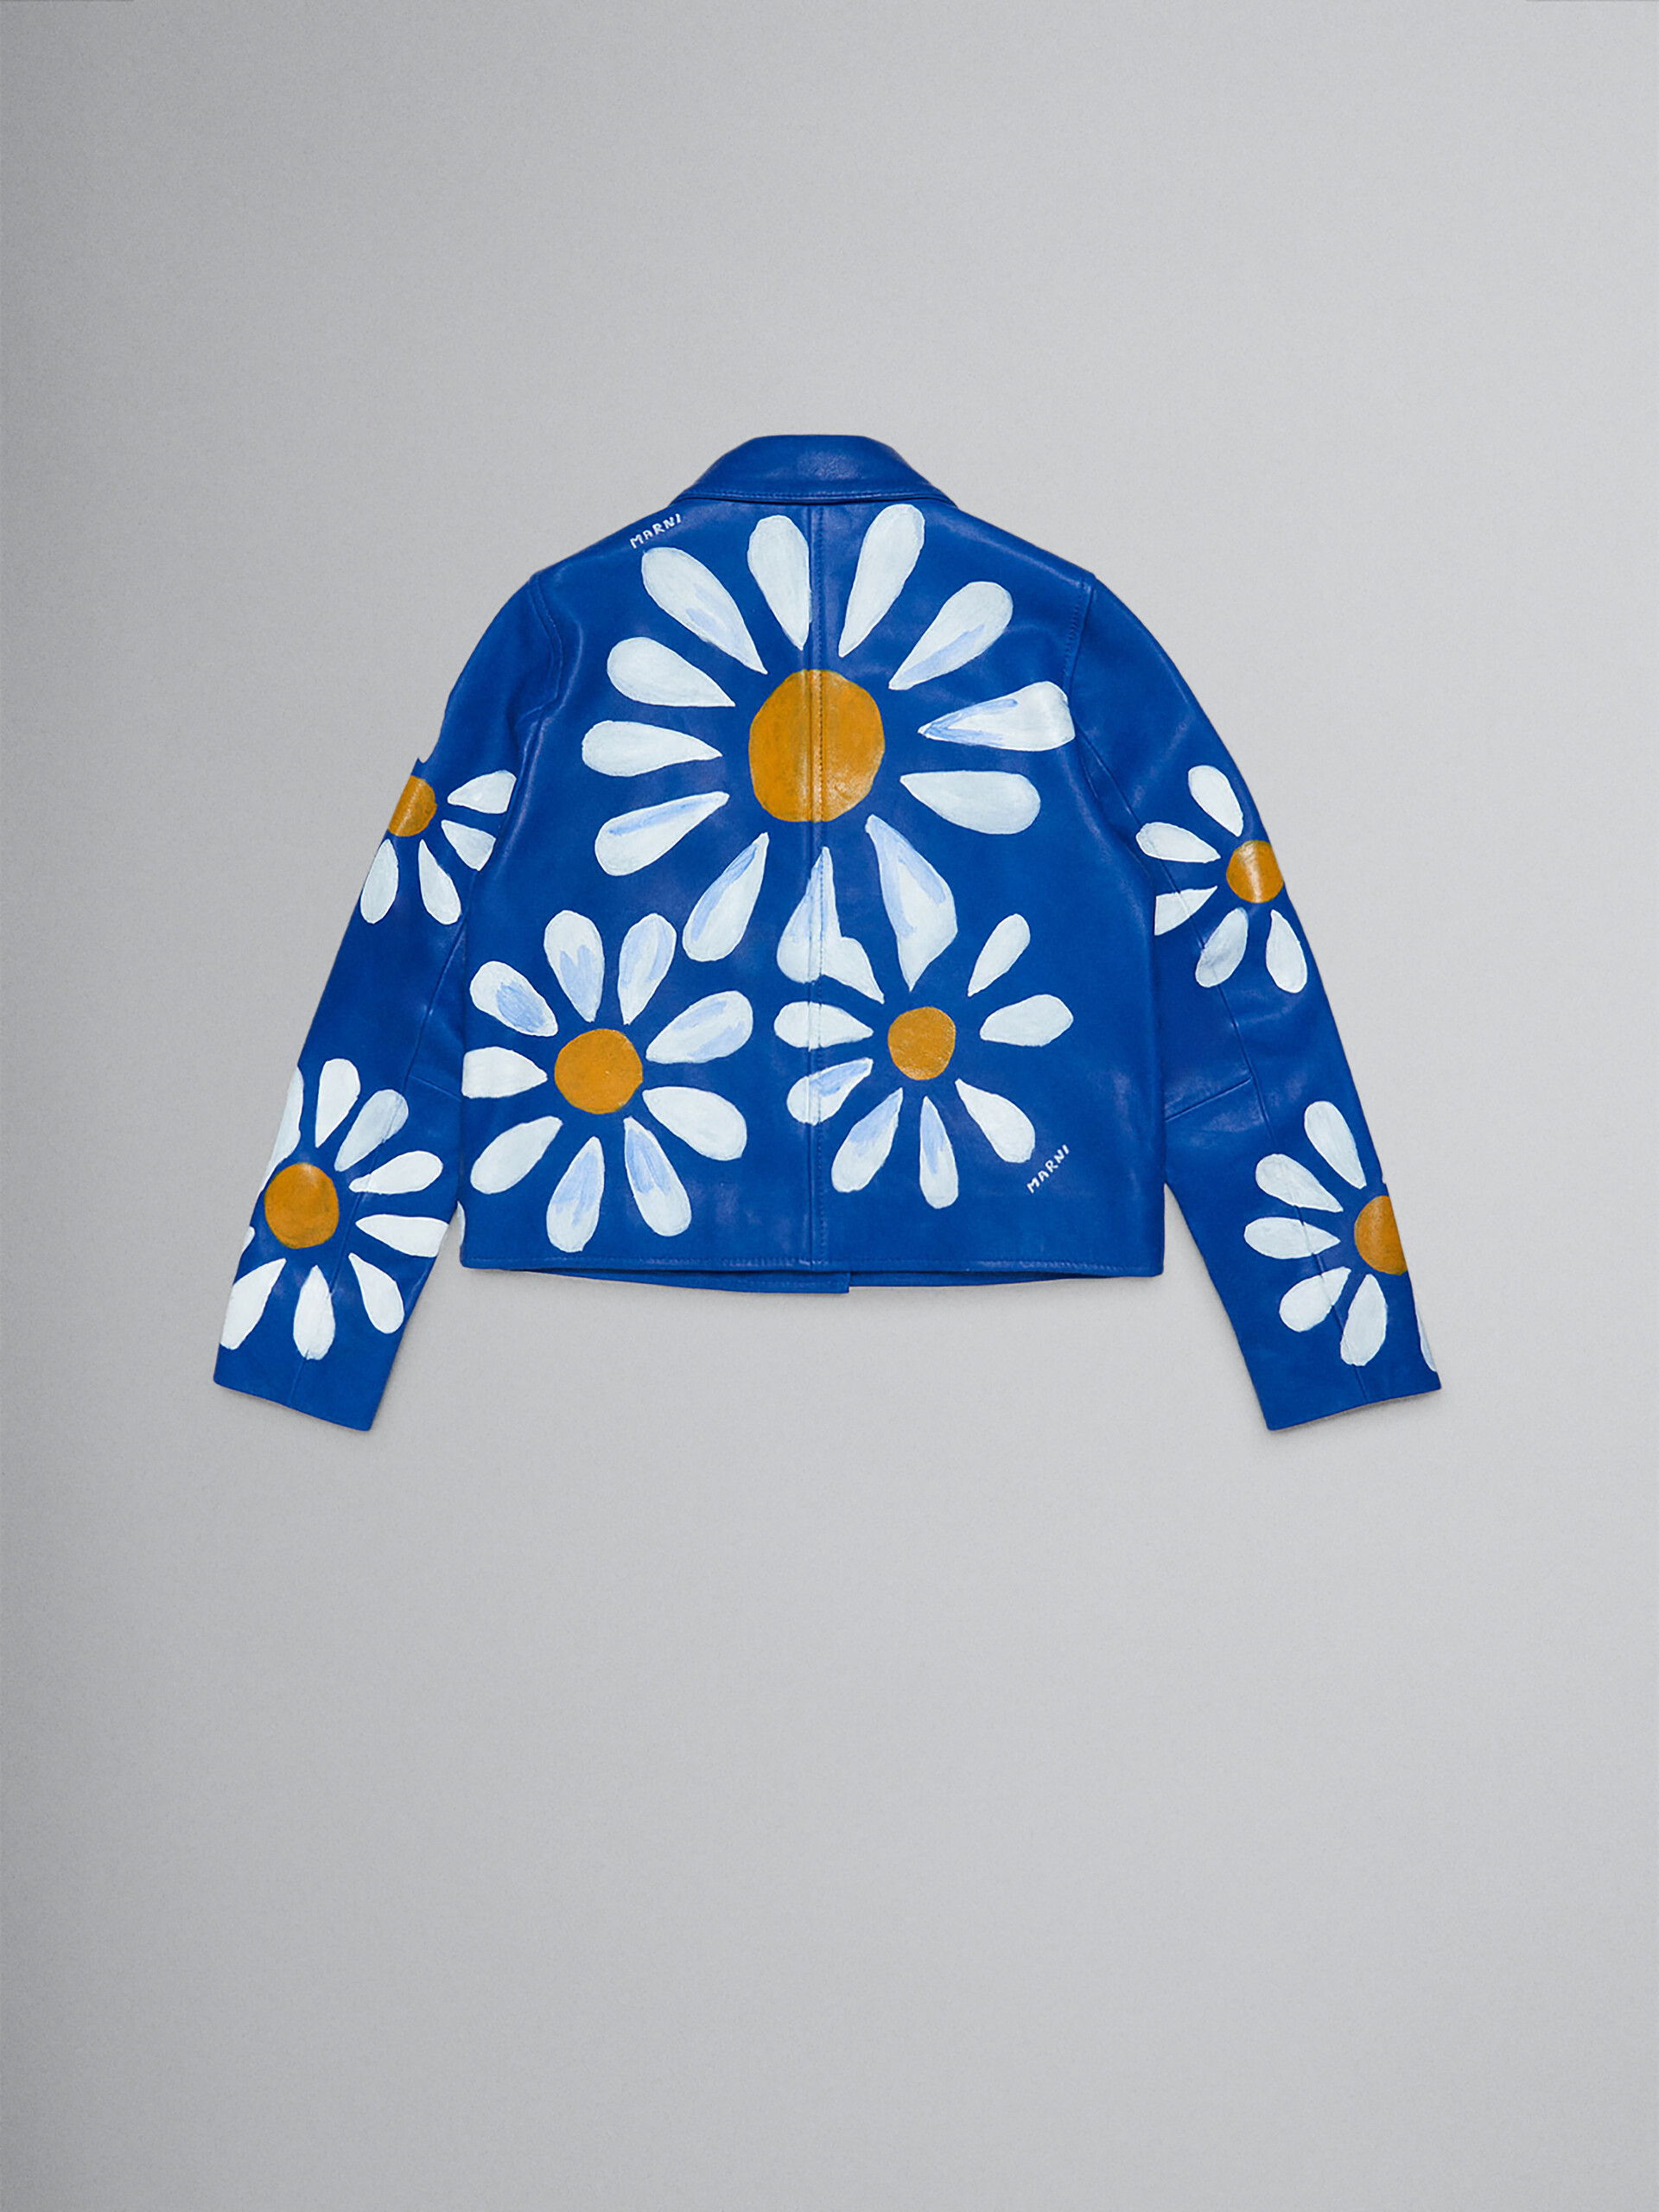 Veste en cuir véritable bleu avec motif marguerites peint à la main - Manteaux - Image 2